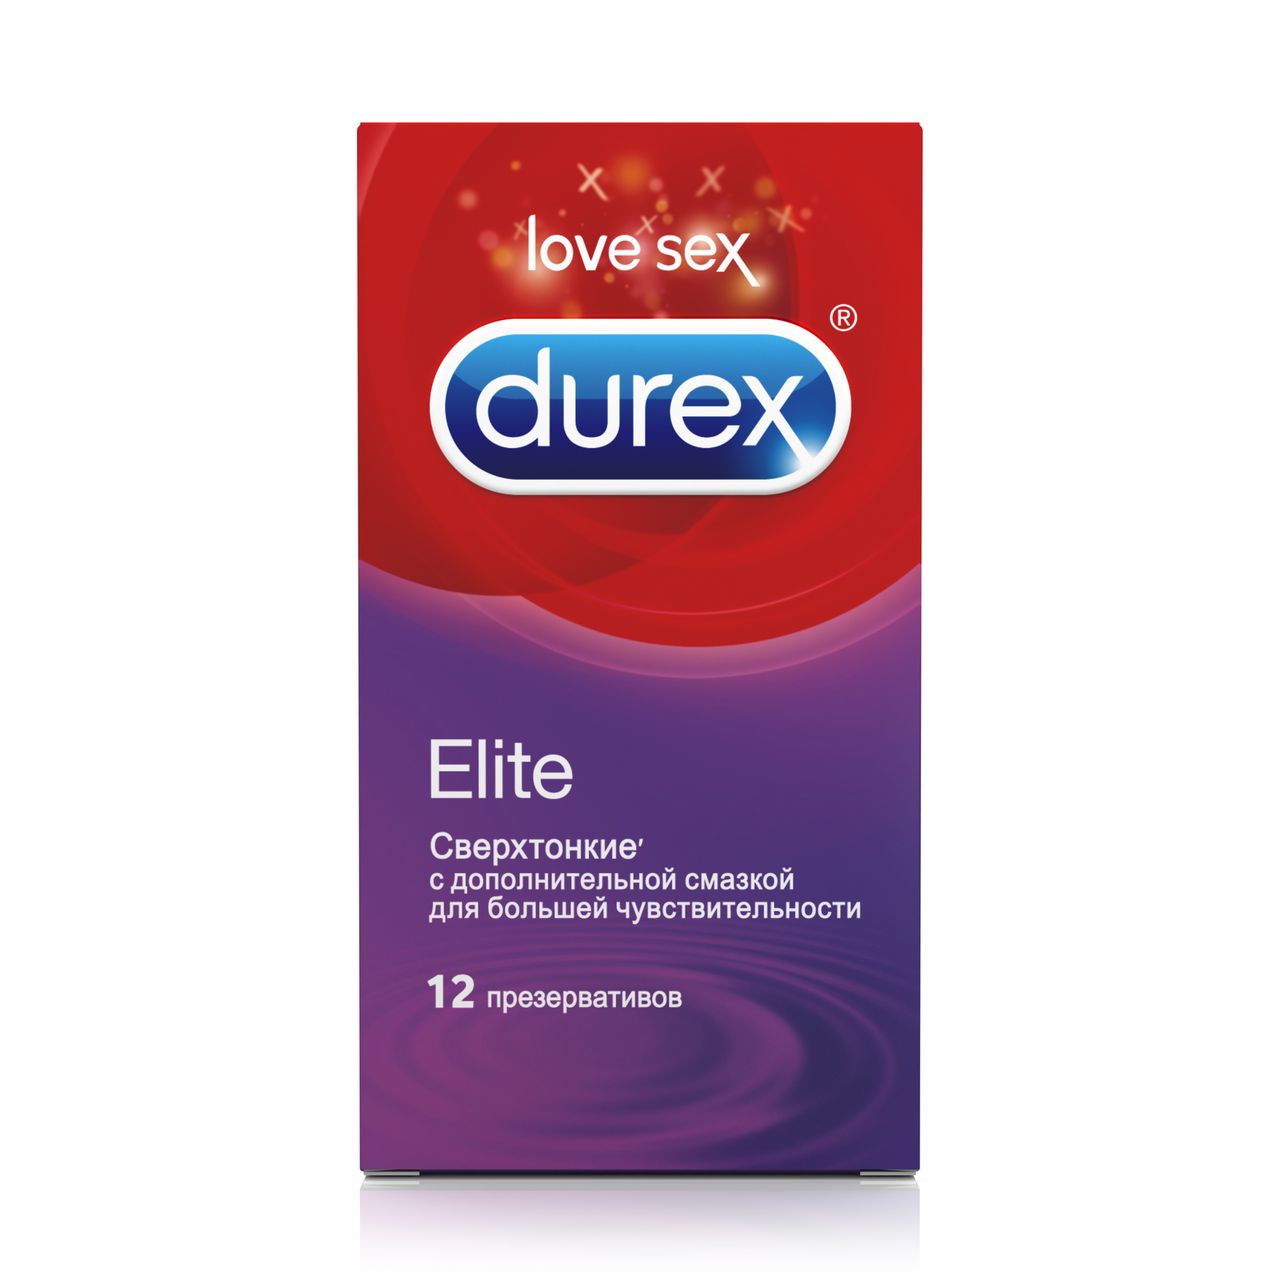 Дюрекс презервативы Элит №3